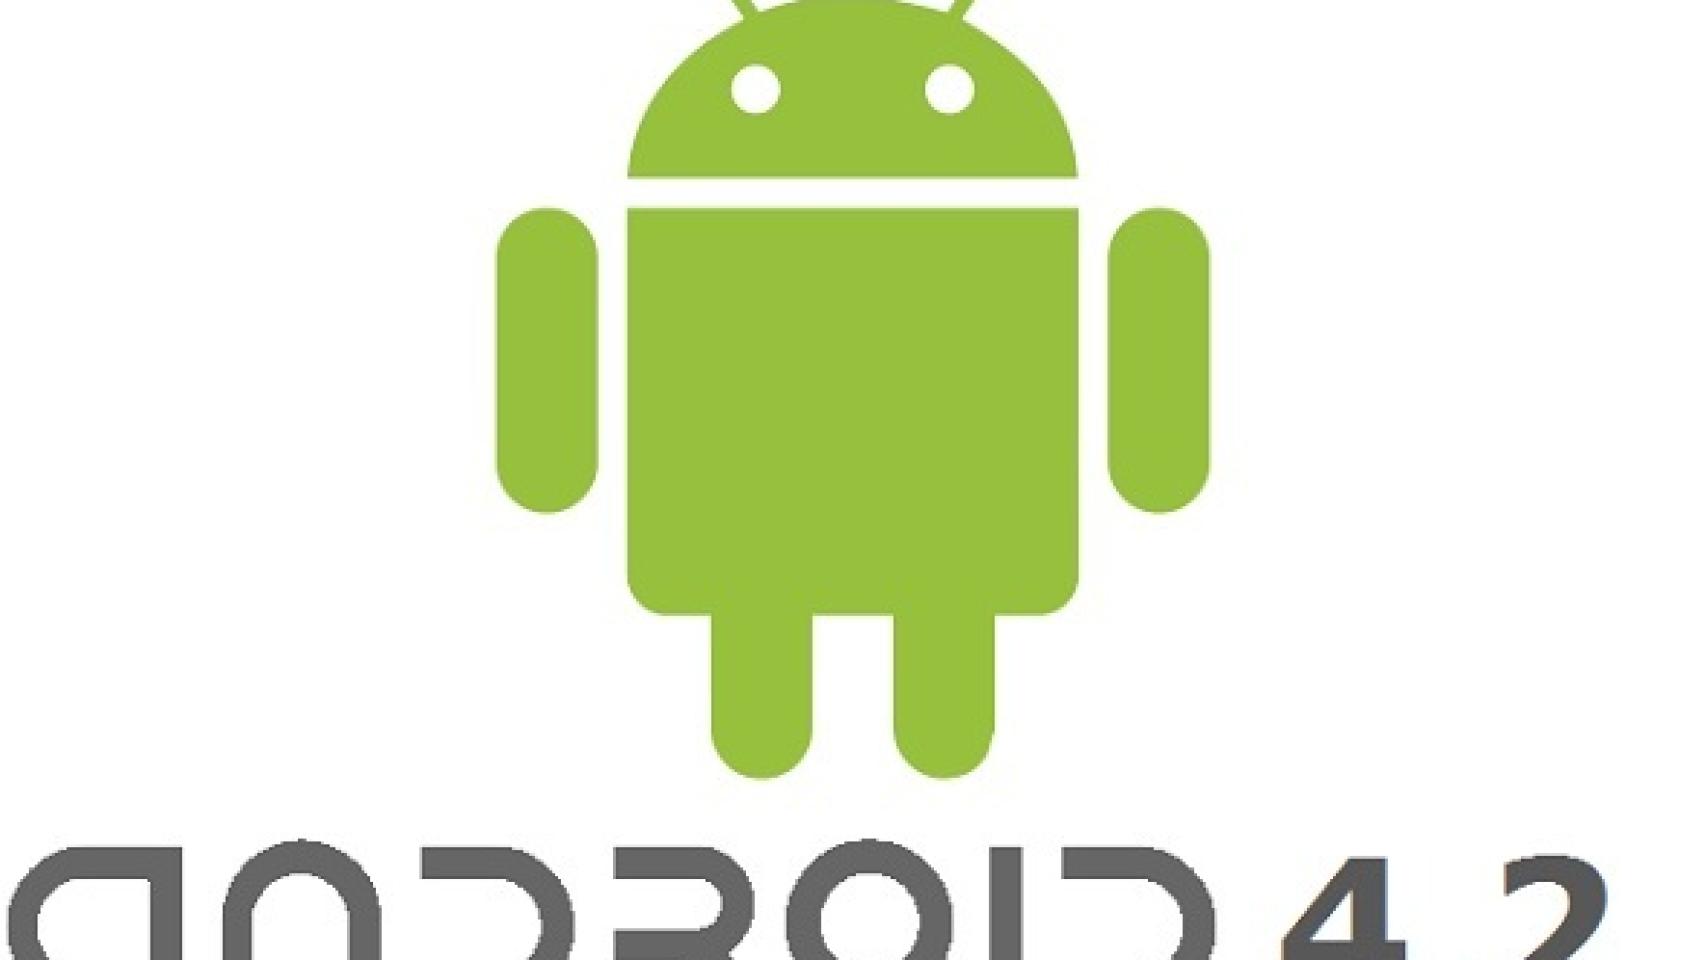 Android 4.2: Reforzando su seguridad con SE Linux, VPN y SMS Premium